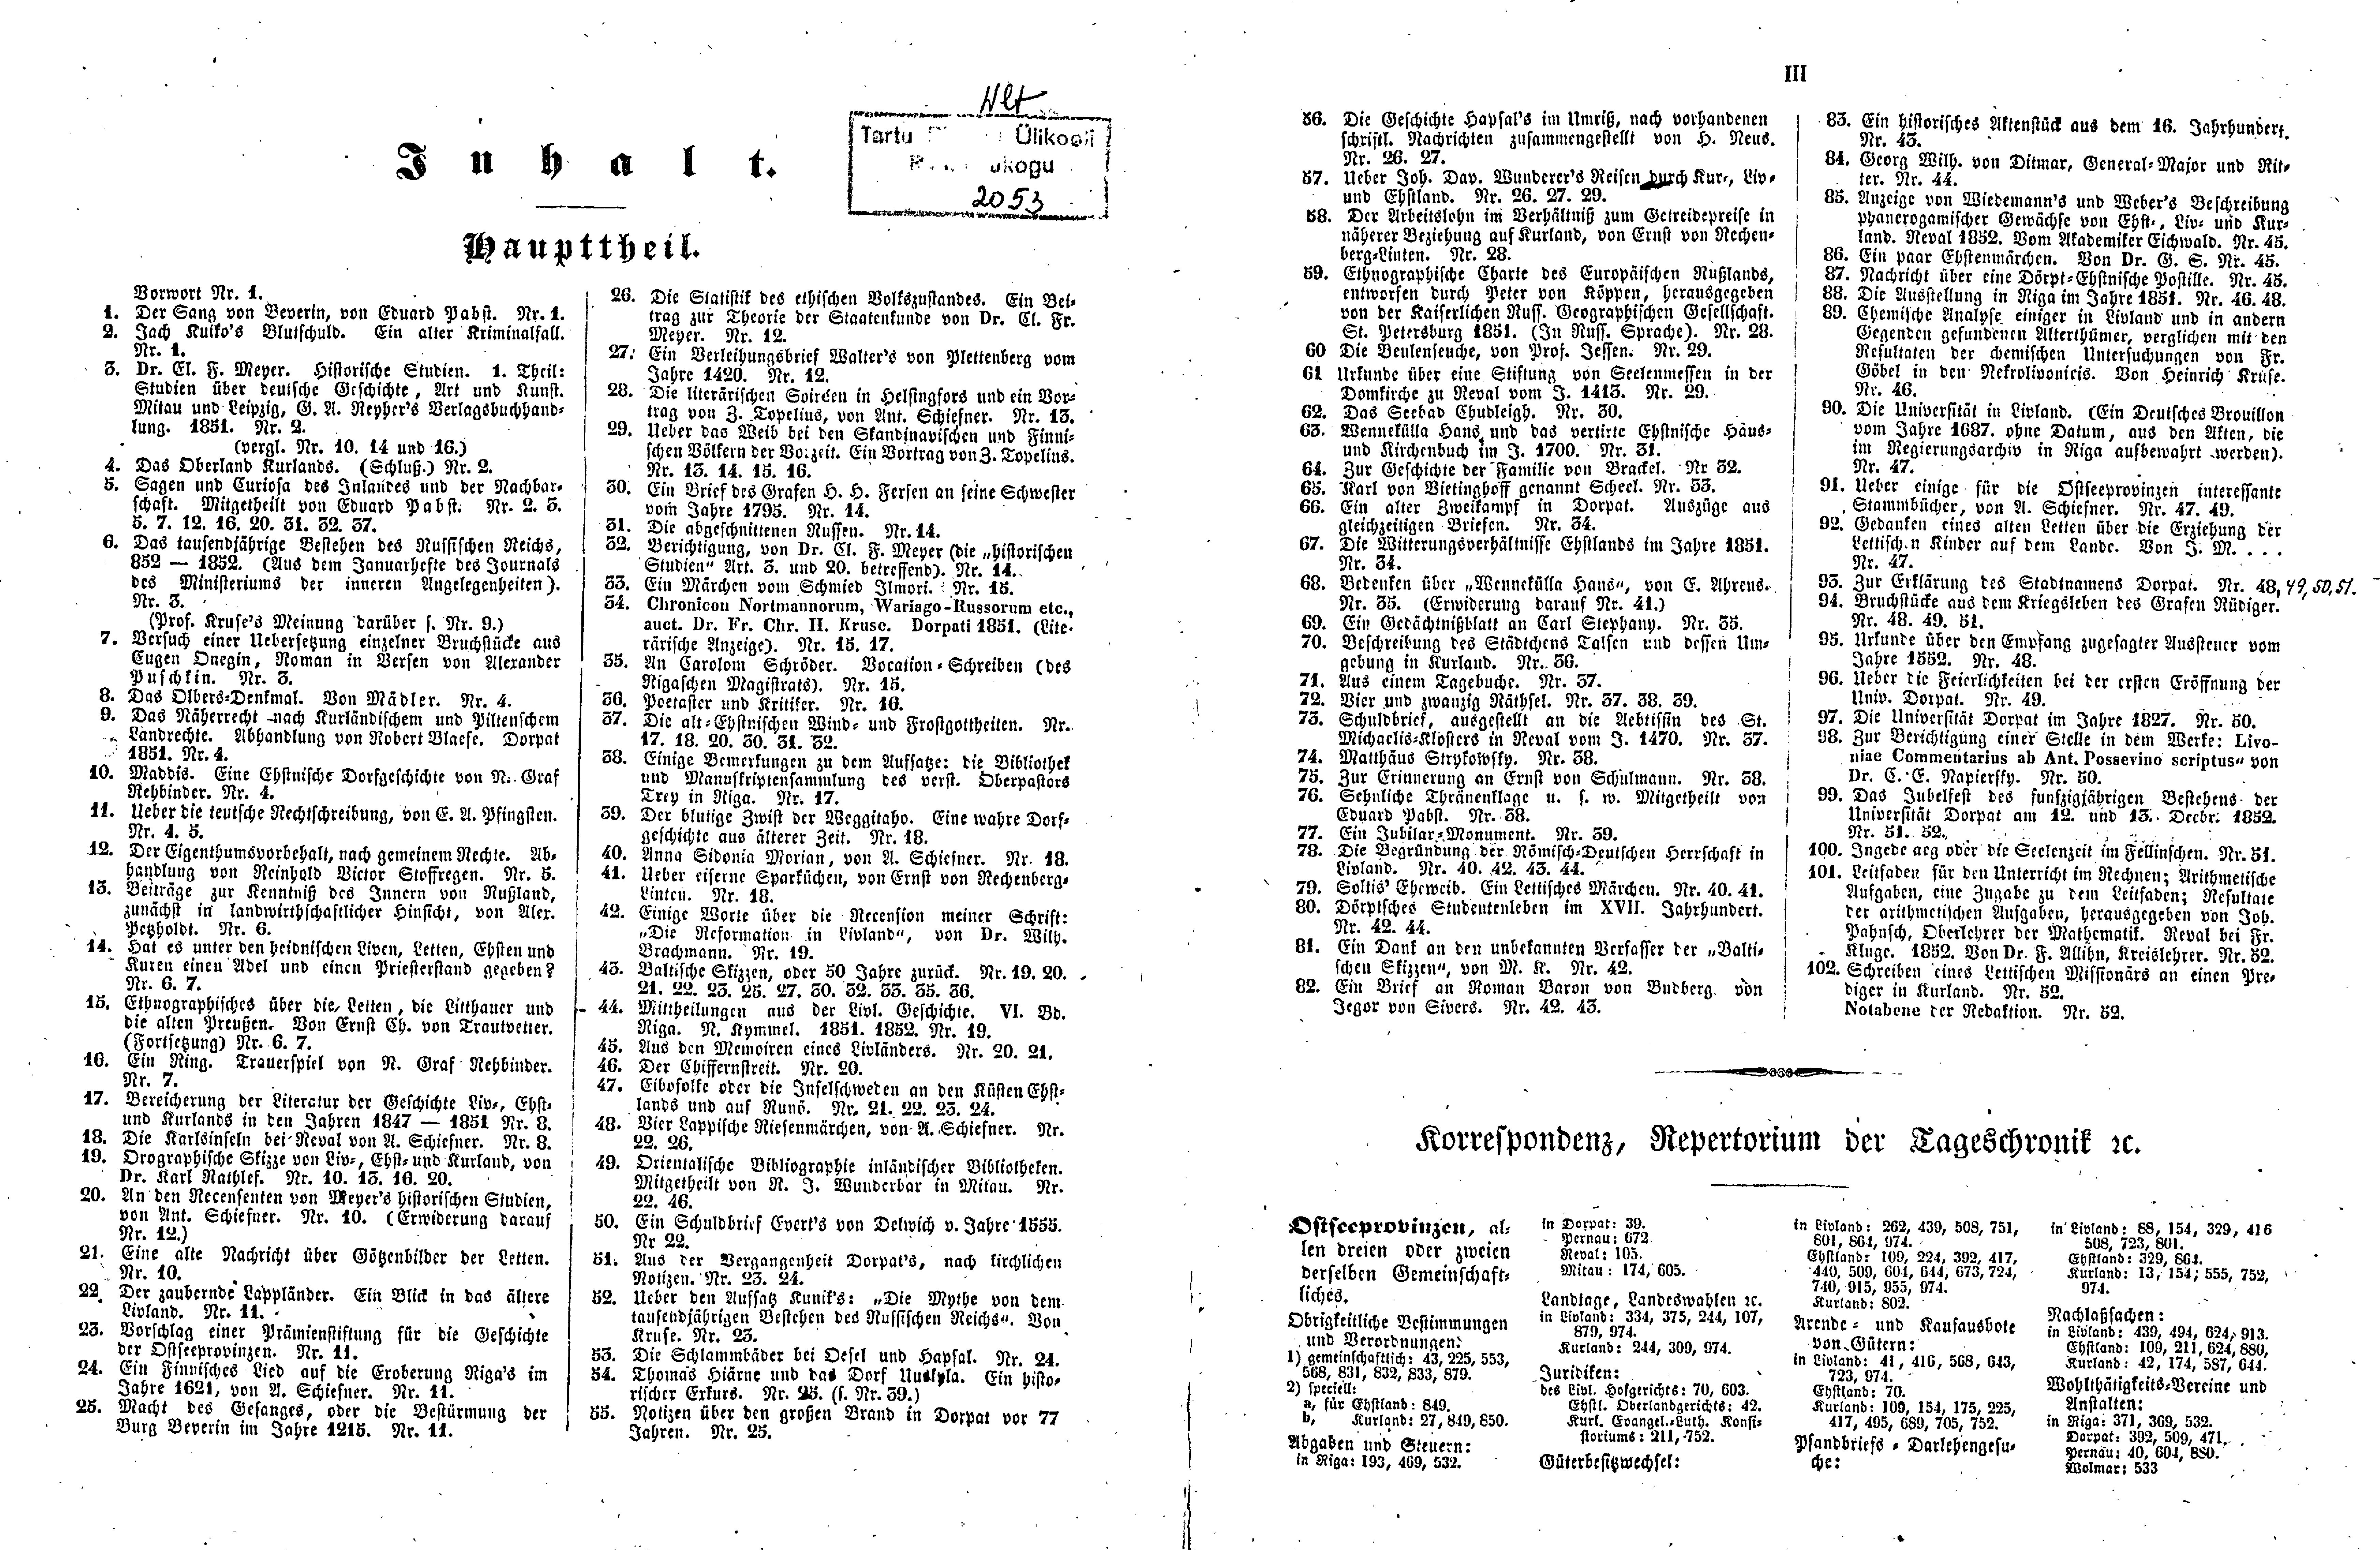 Das Inland [17] (1852) | 2. (II-III) Index